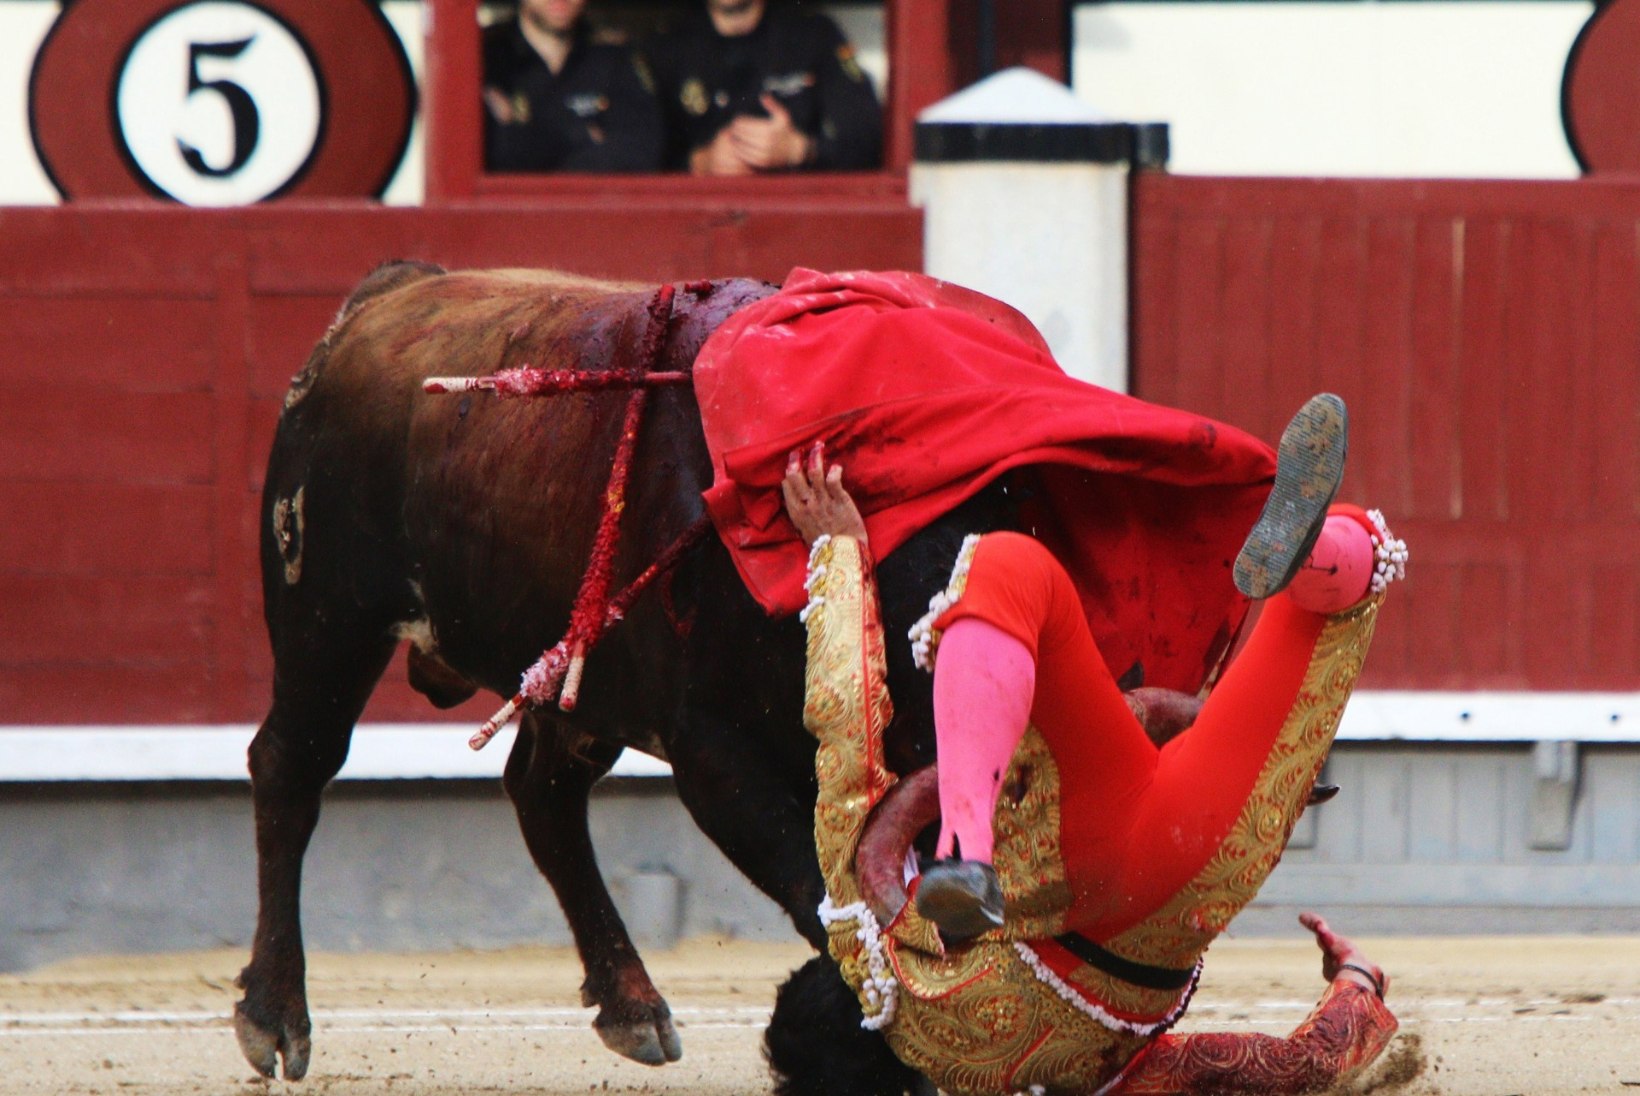 FOTOD: Madridis said matadoorid härgadelt räsida